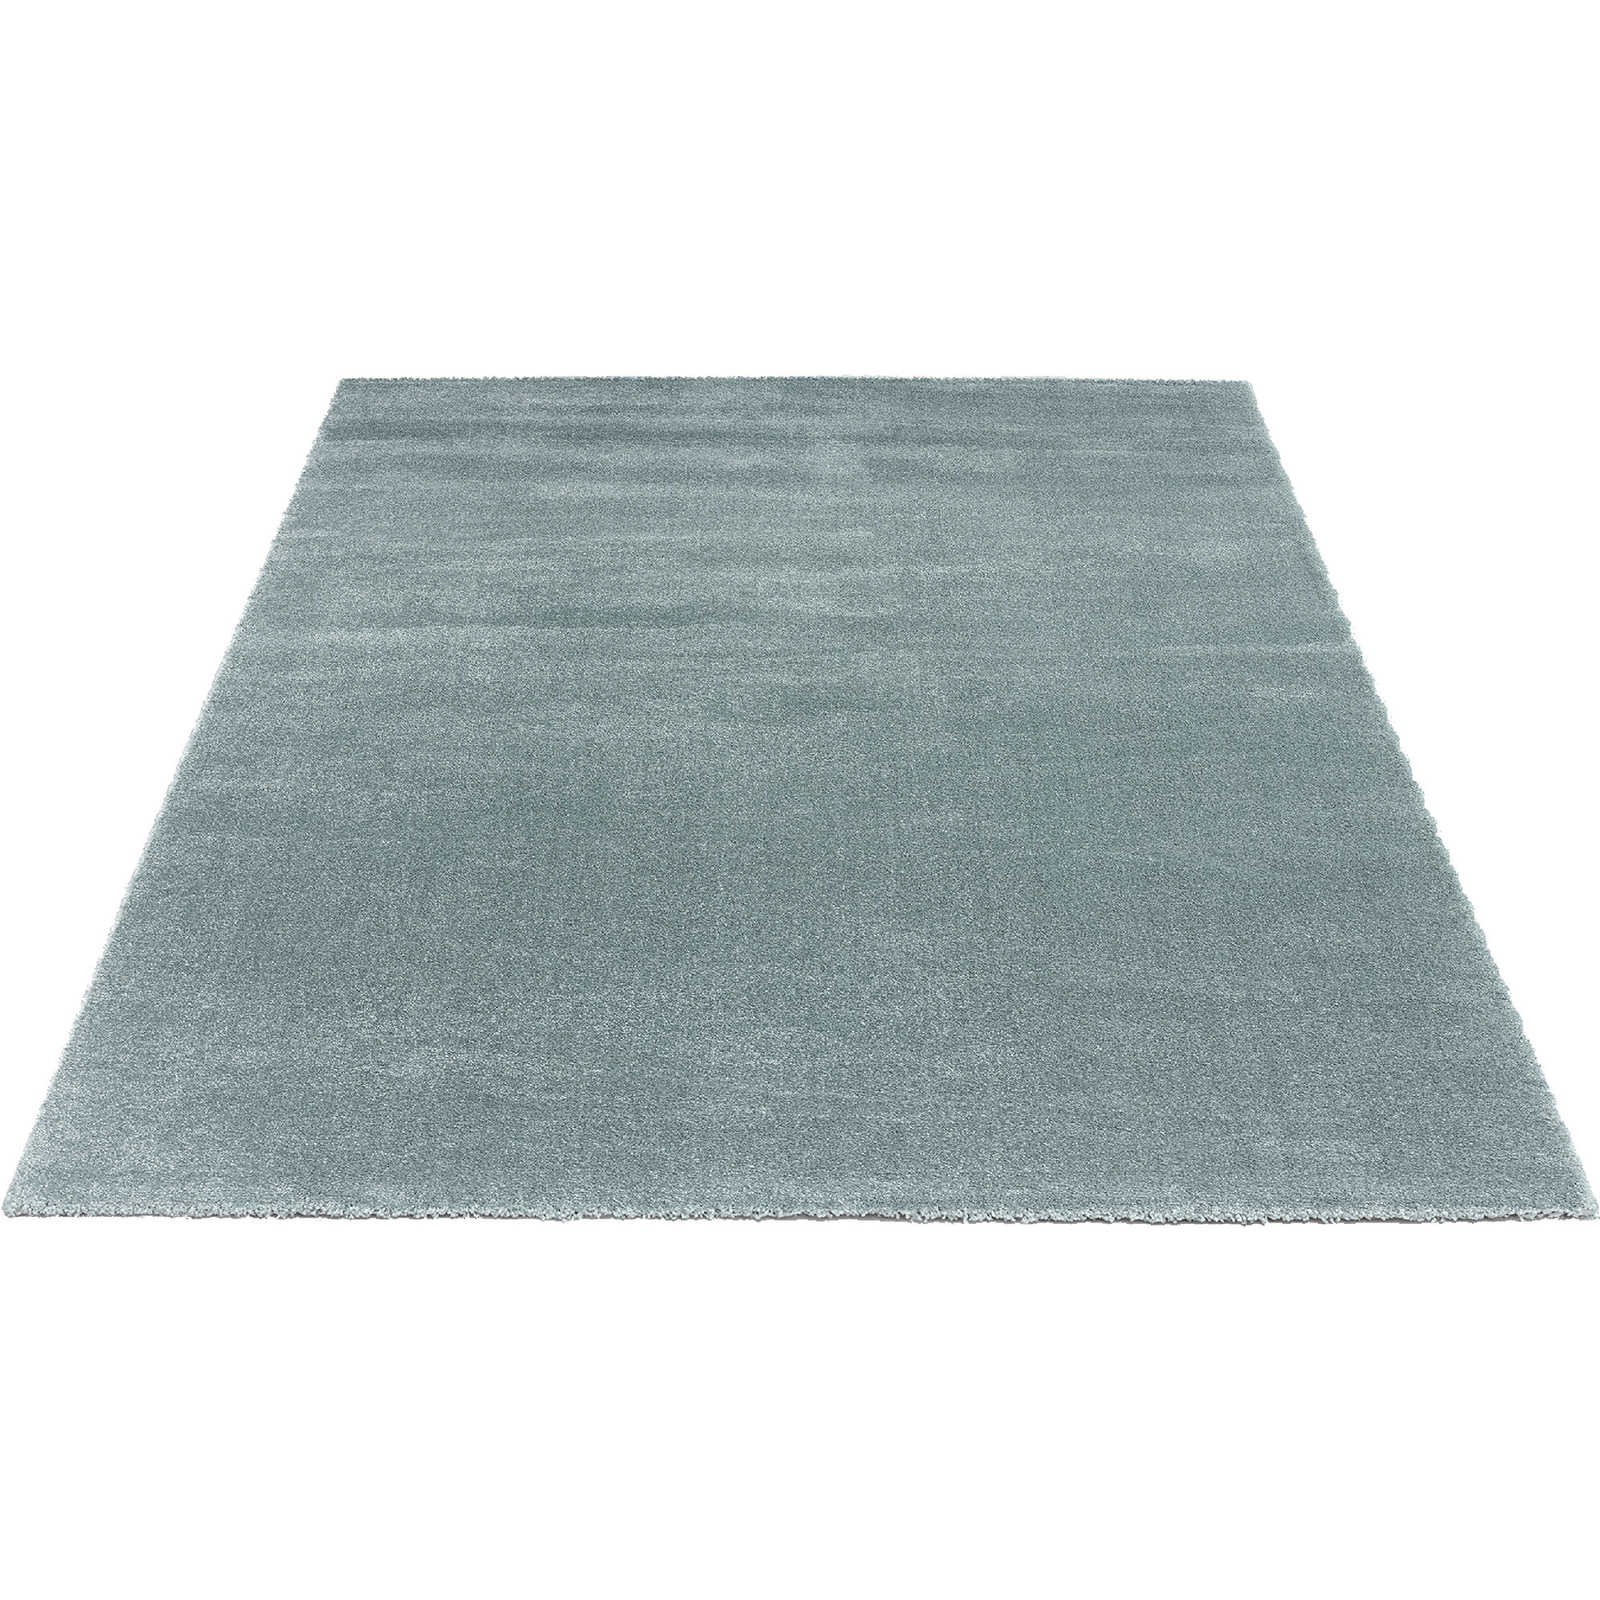 Eenvoudig kortpolig tapijt in blauw - 290 x 200 cm
